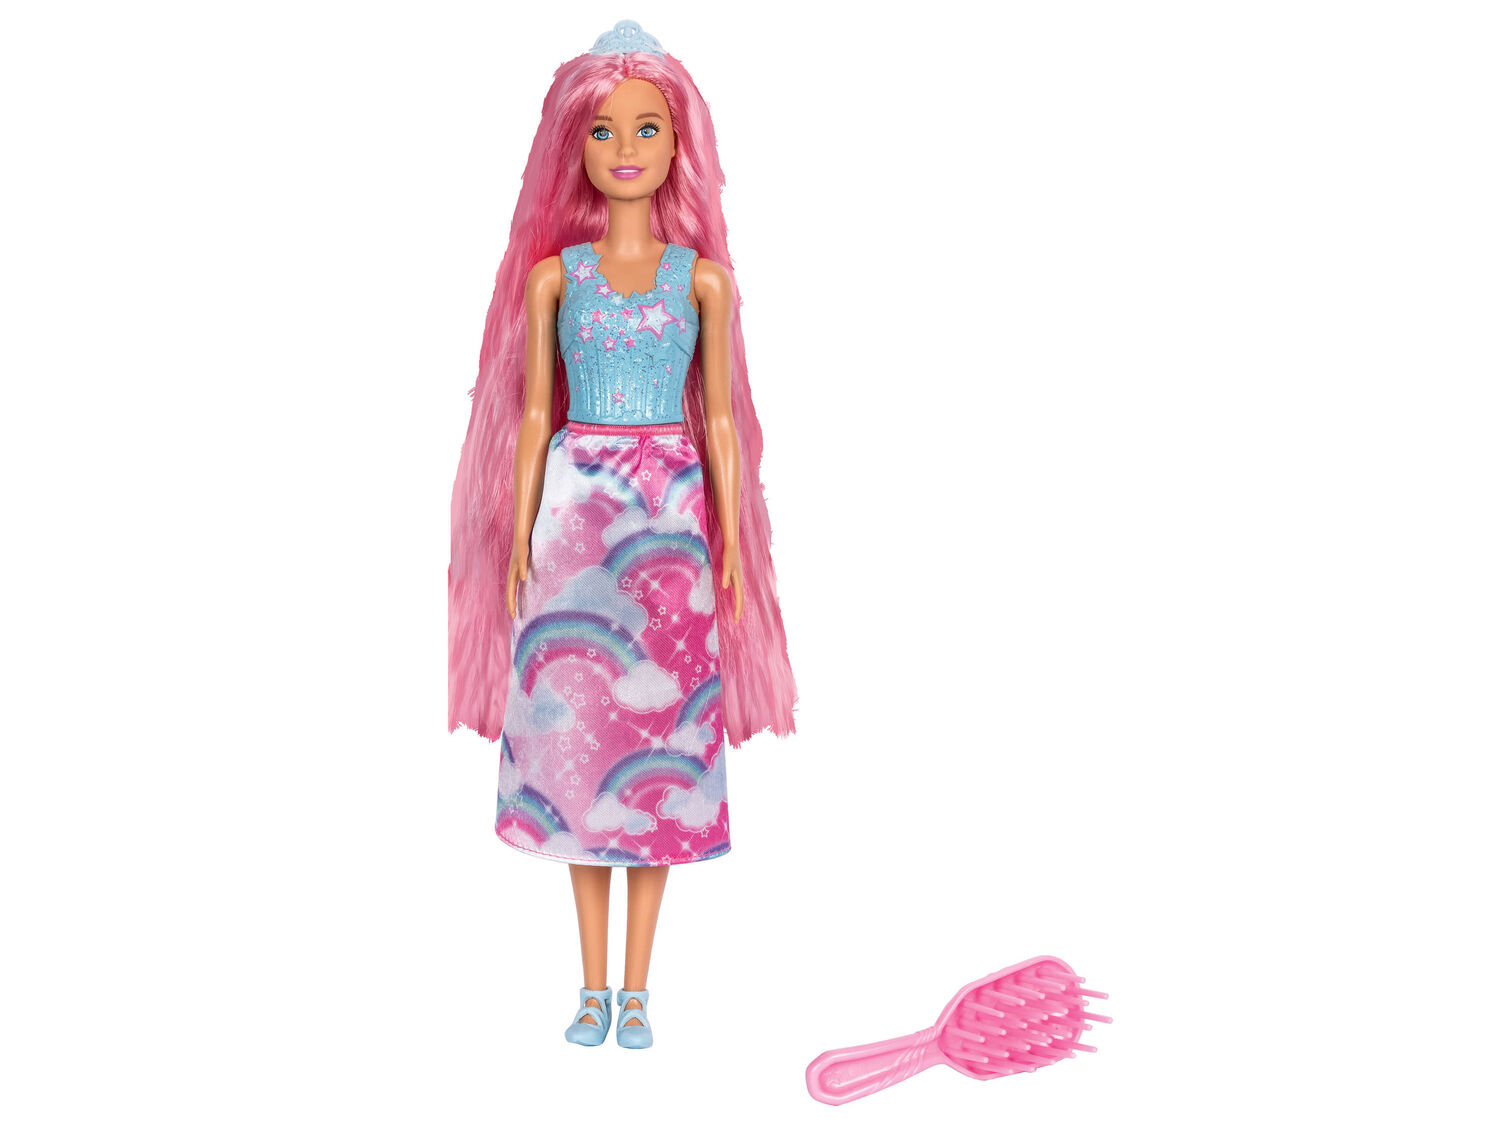 Lalka Barbie lub zestaw Hot Wheels , cena 19,00 PLN  
różne wzory
Opis